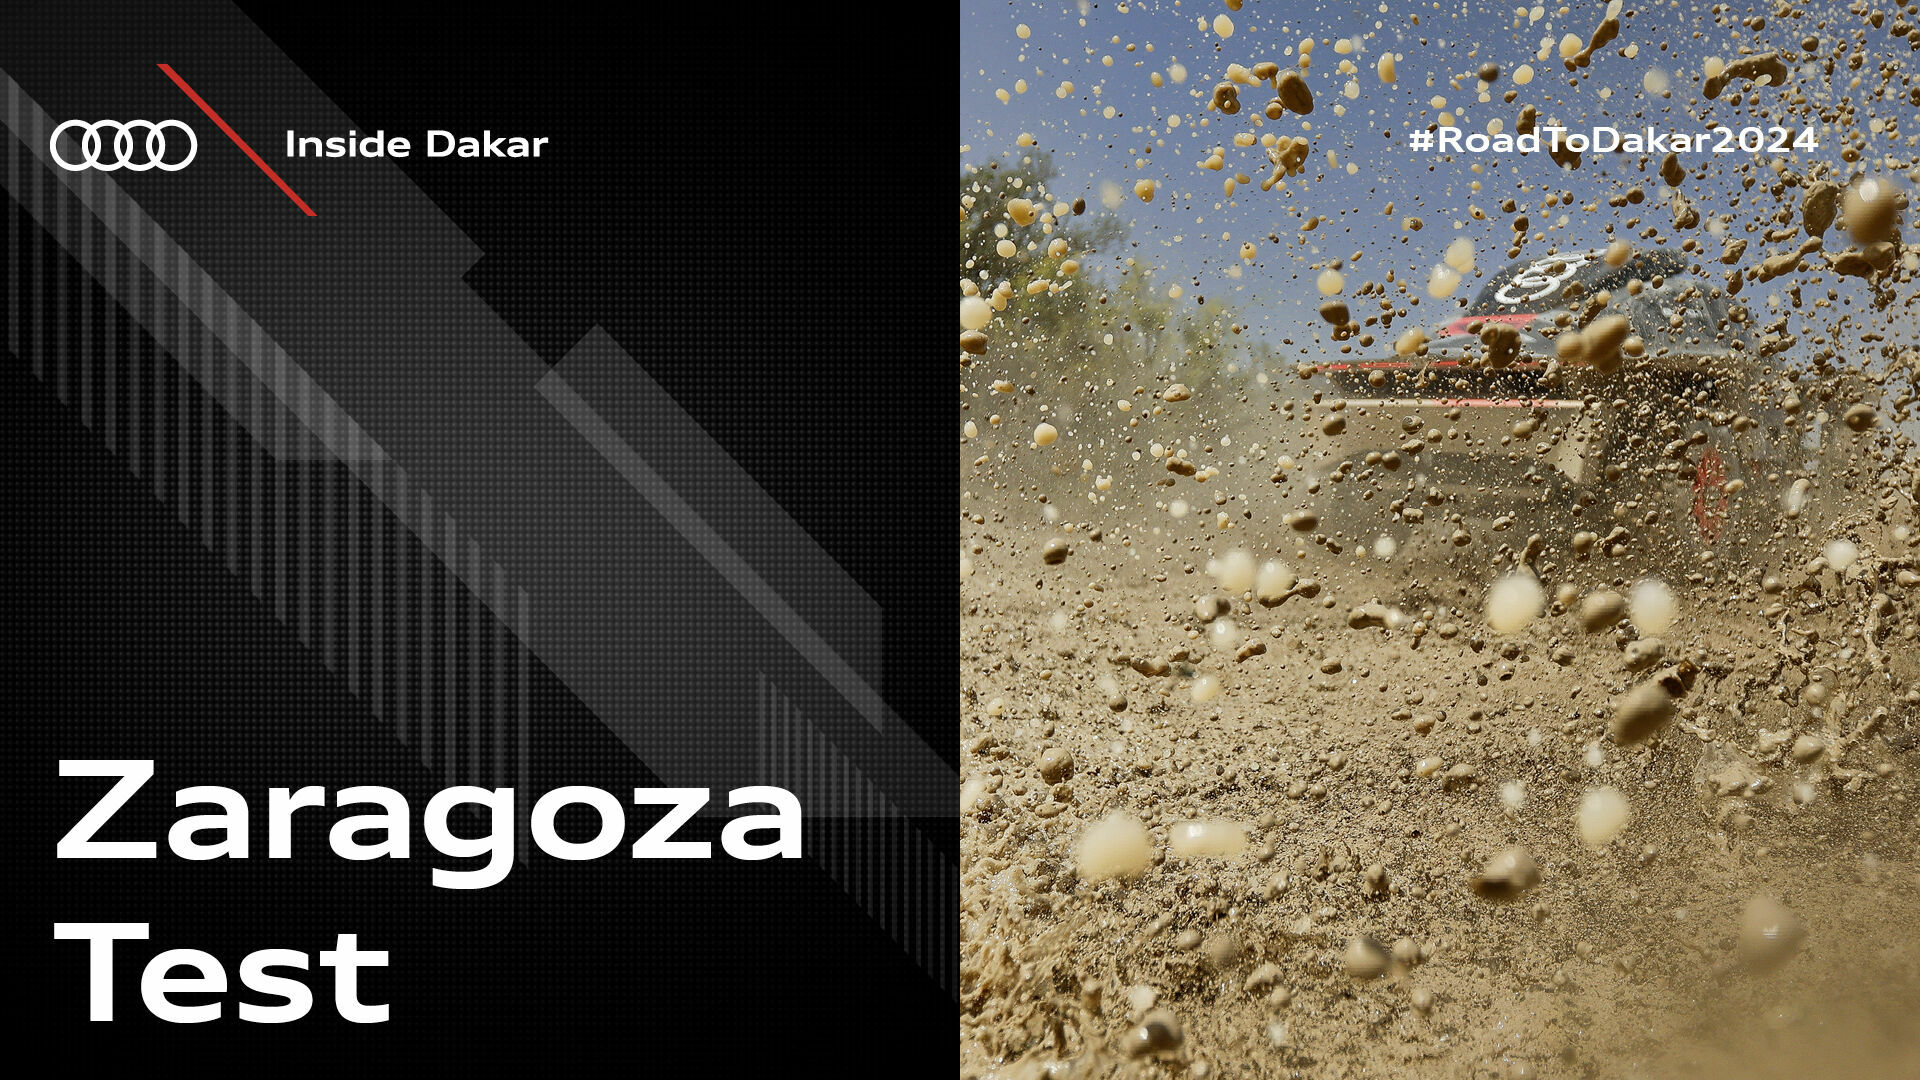 Inside Dakar: Zaragoza Test 2023